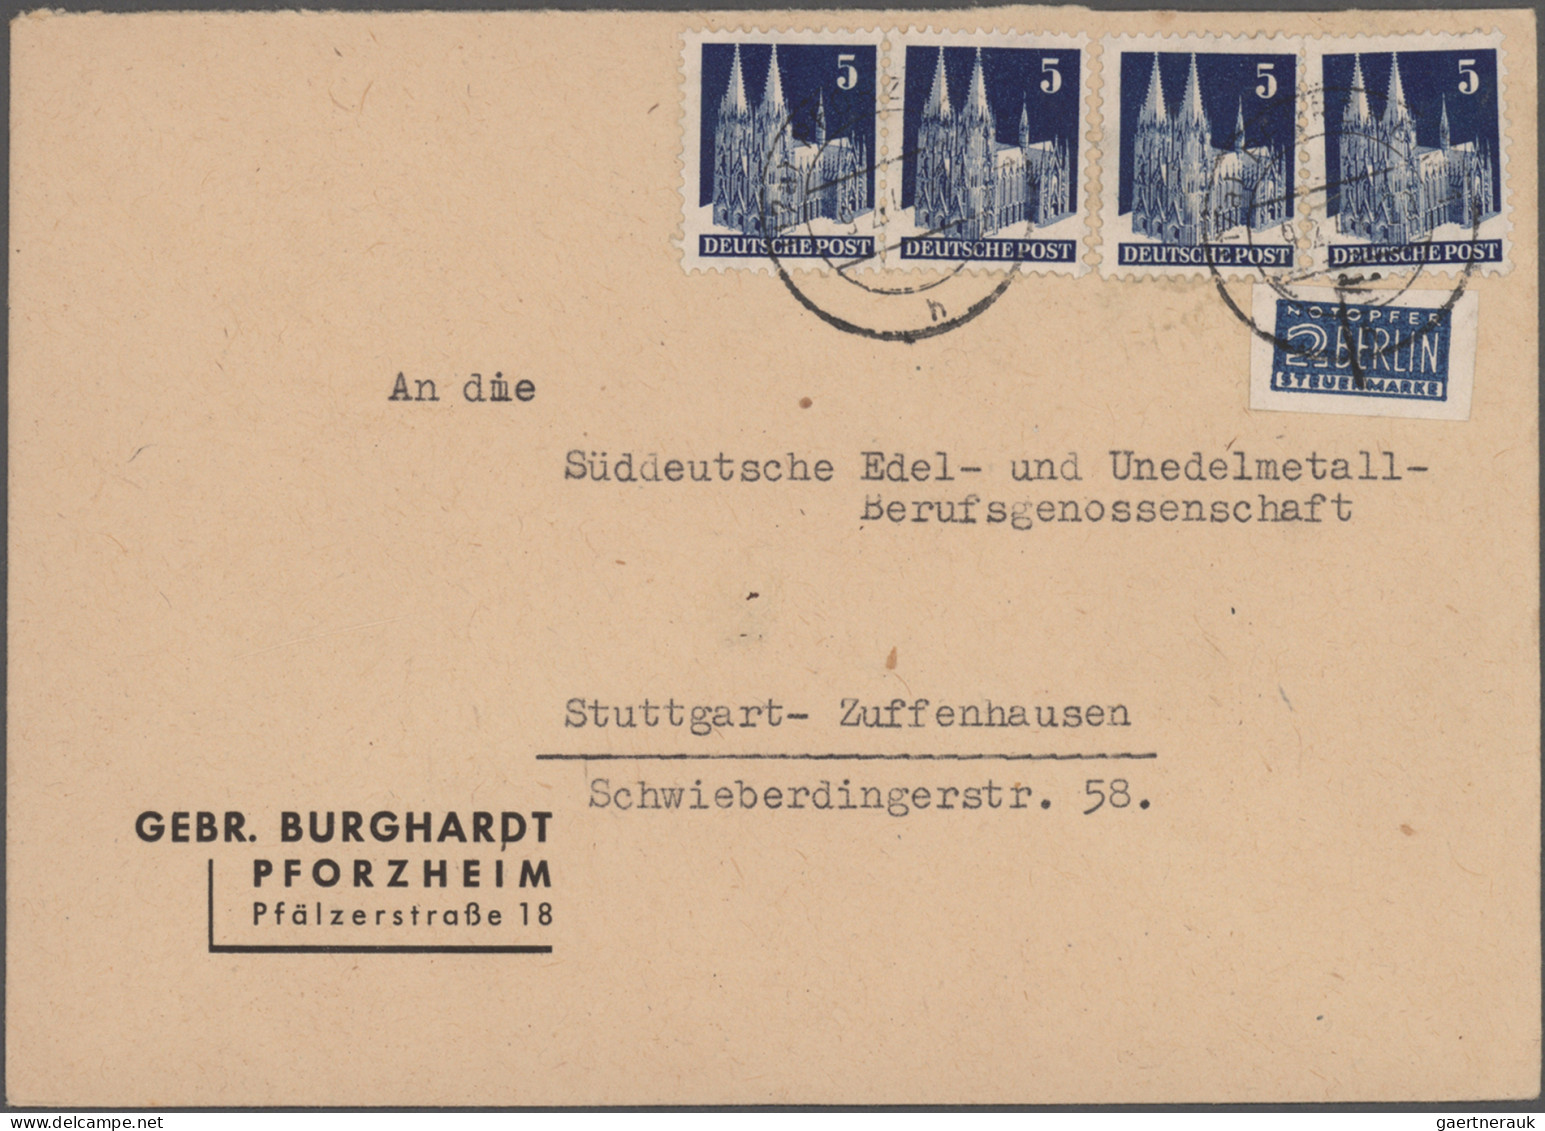 Nachlässe: 1900/1980 ca., Nachlass Briefe, Ganzsachen und Karten, einige hundert